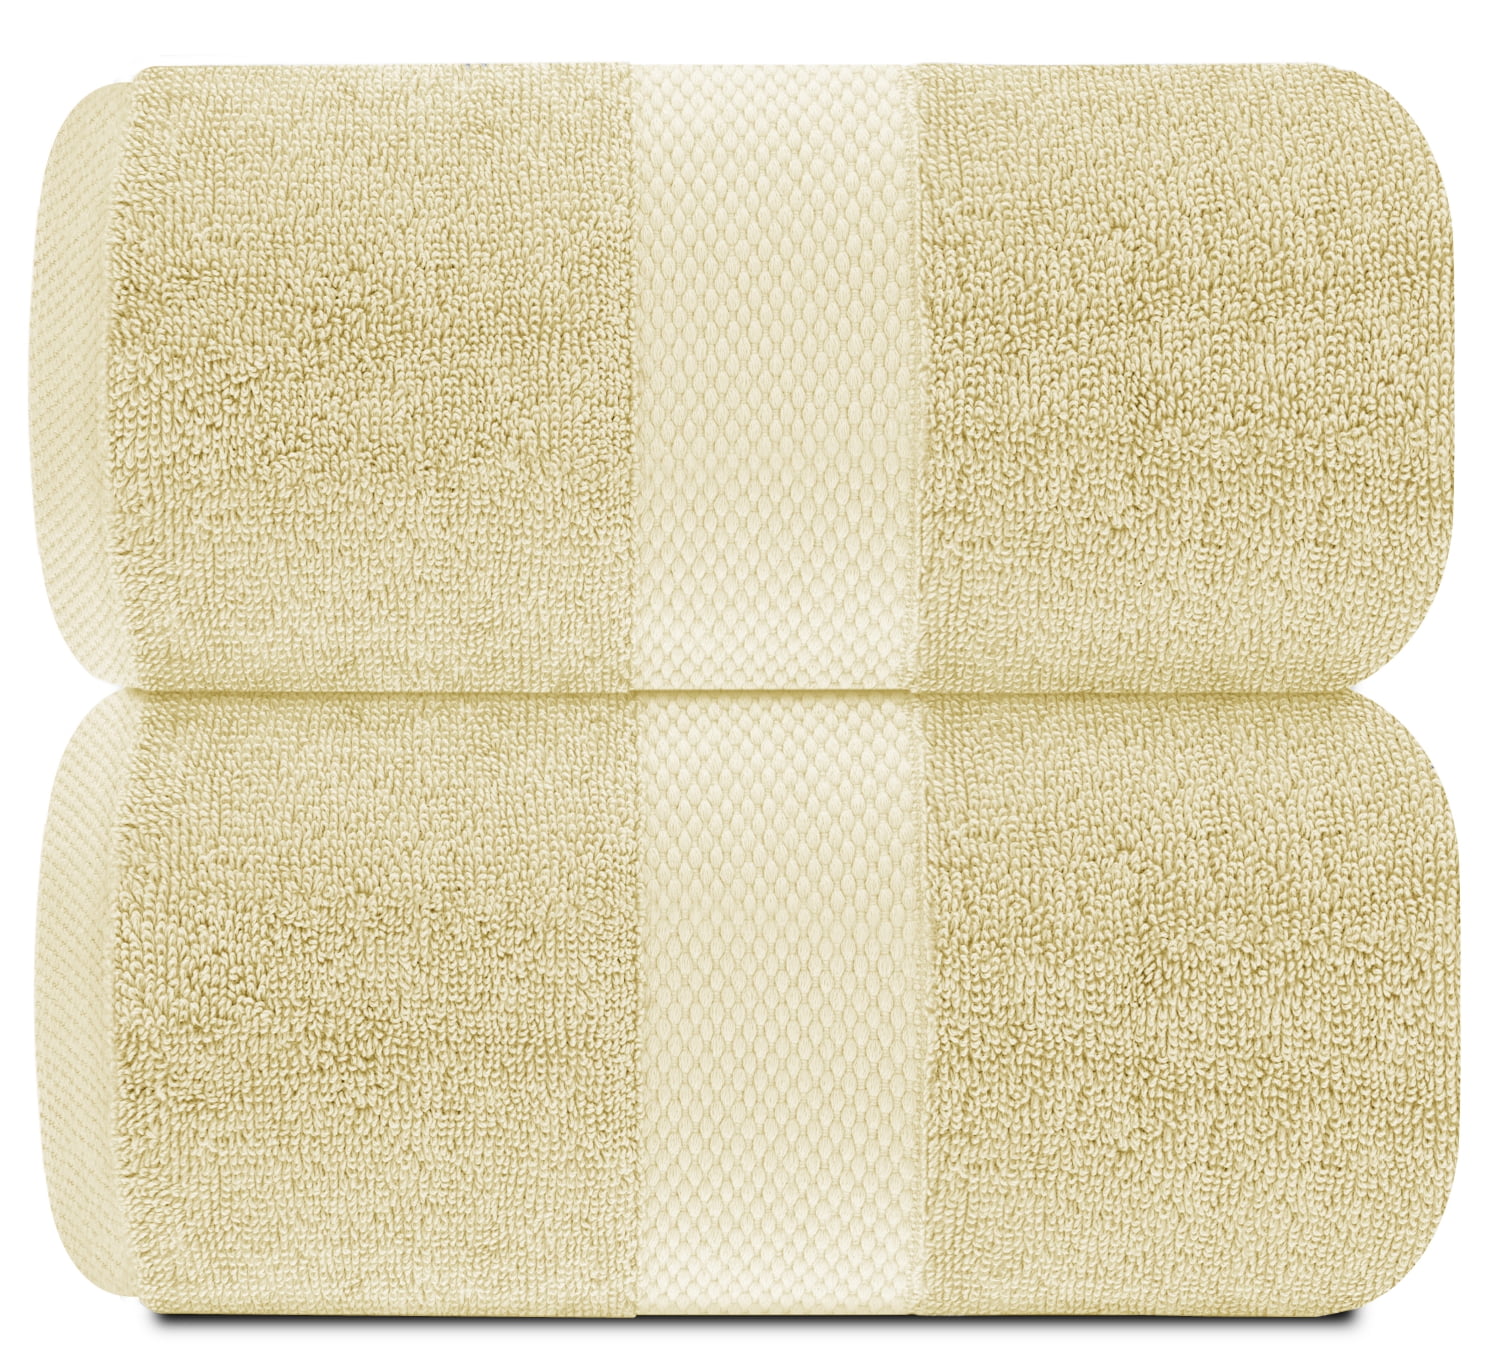 White Bath Sheets Bulk 35 x 70 100% Cotton 24 lbs/doz